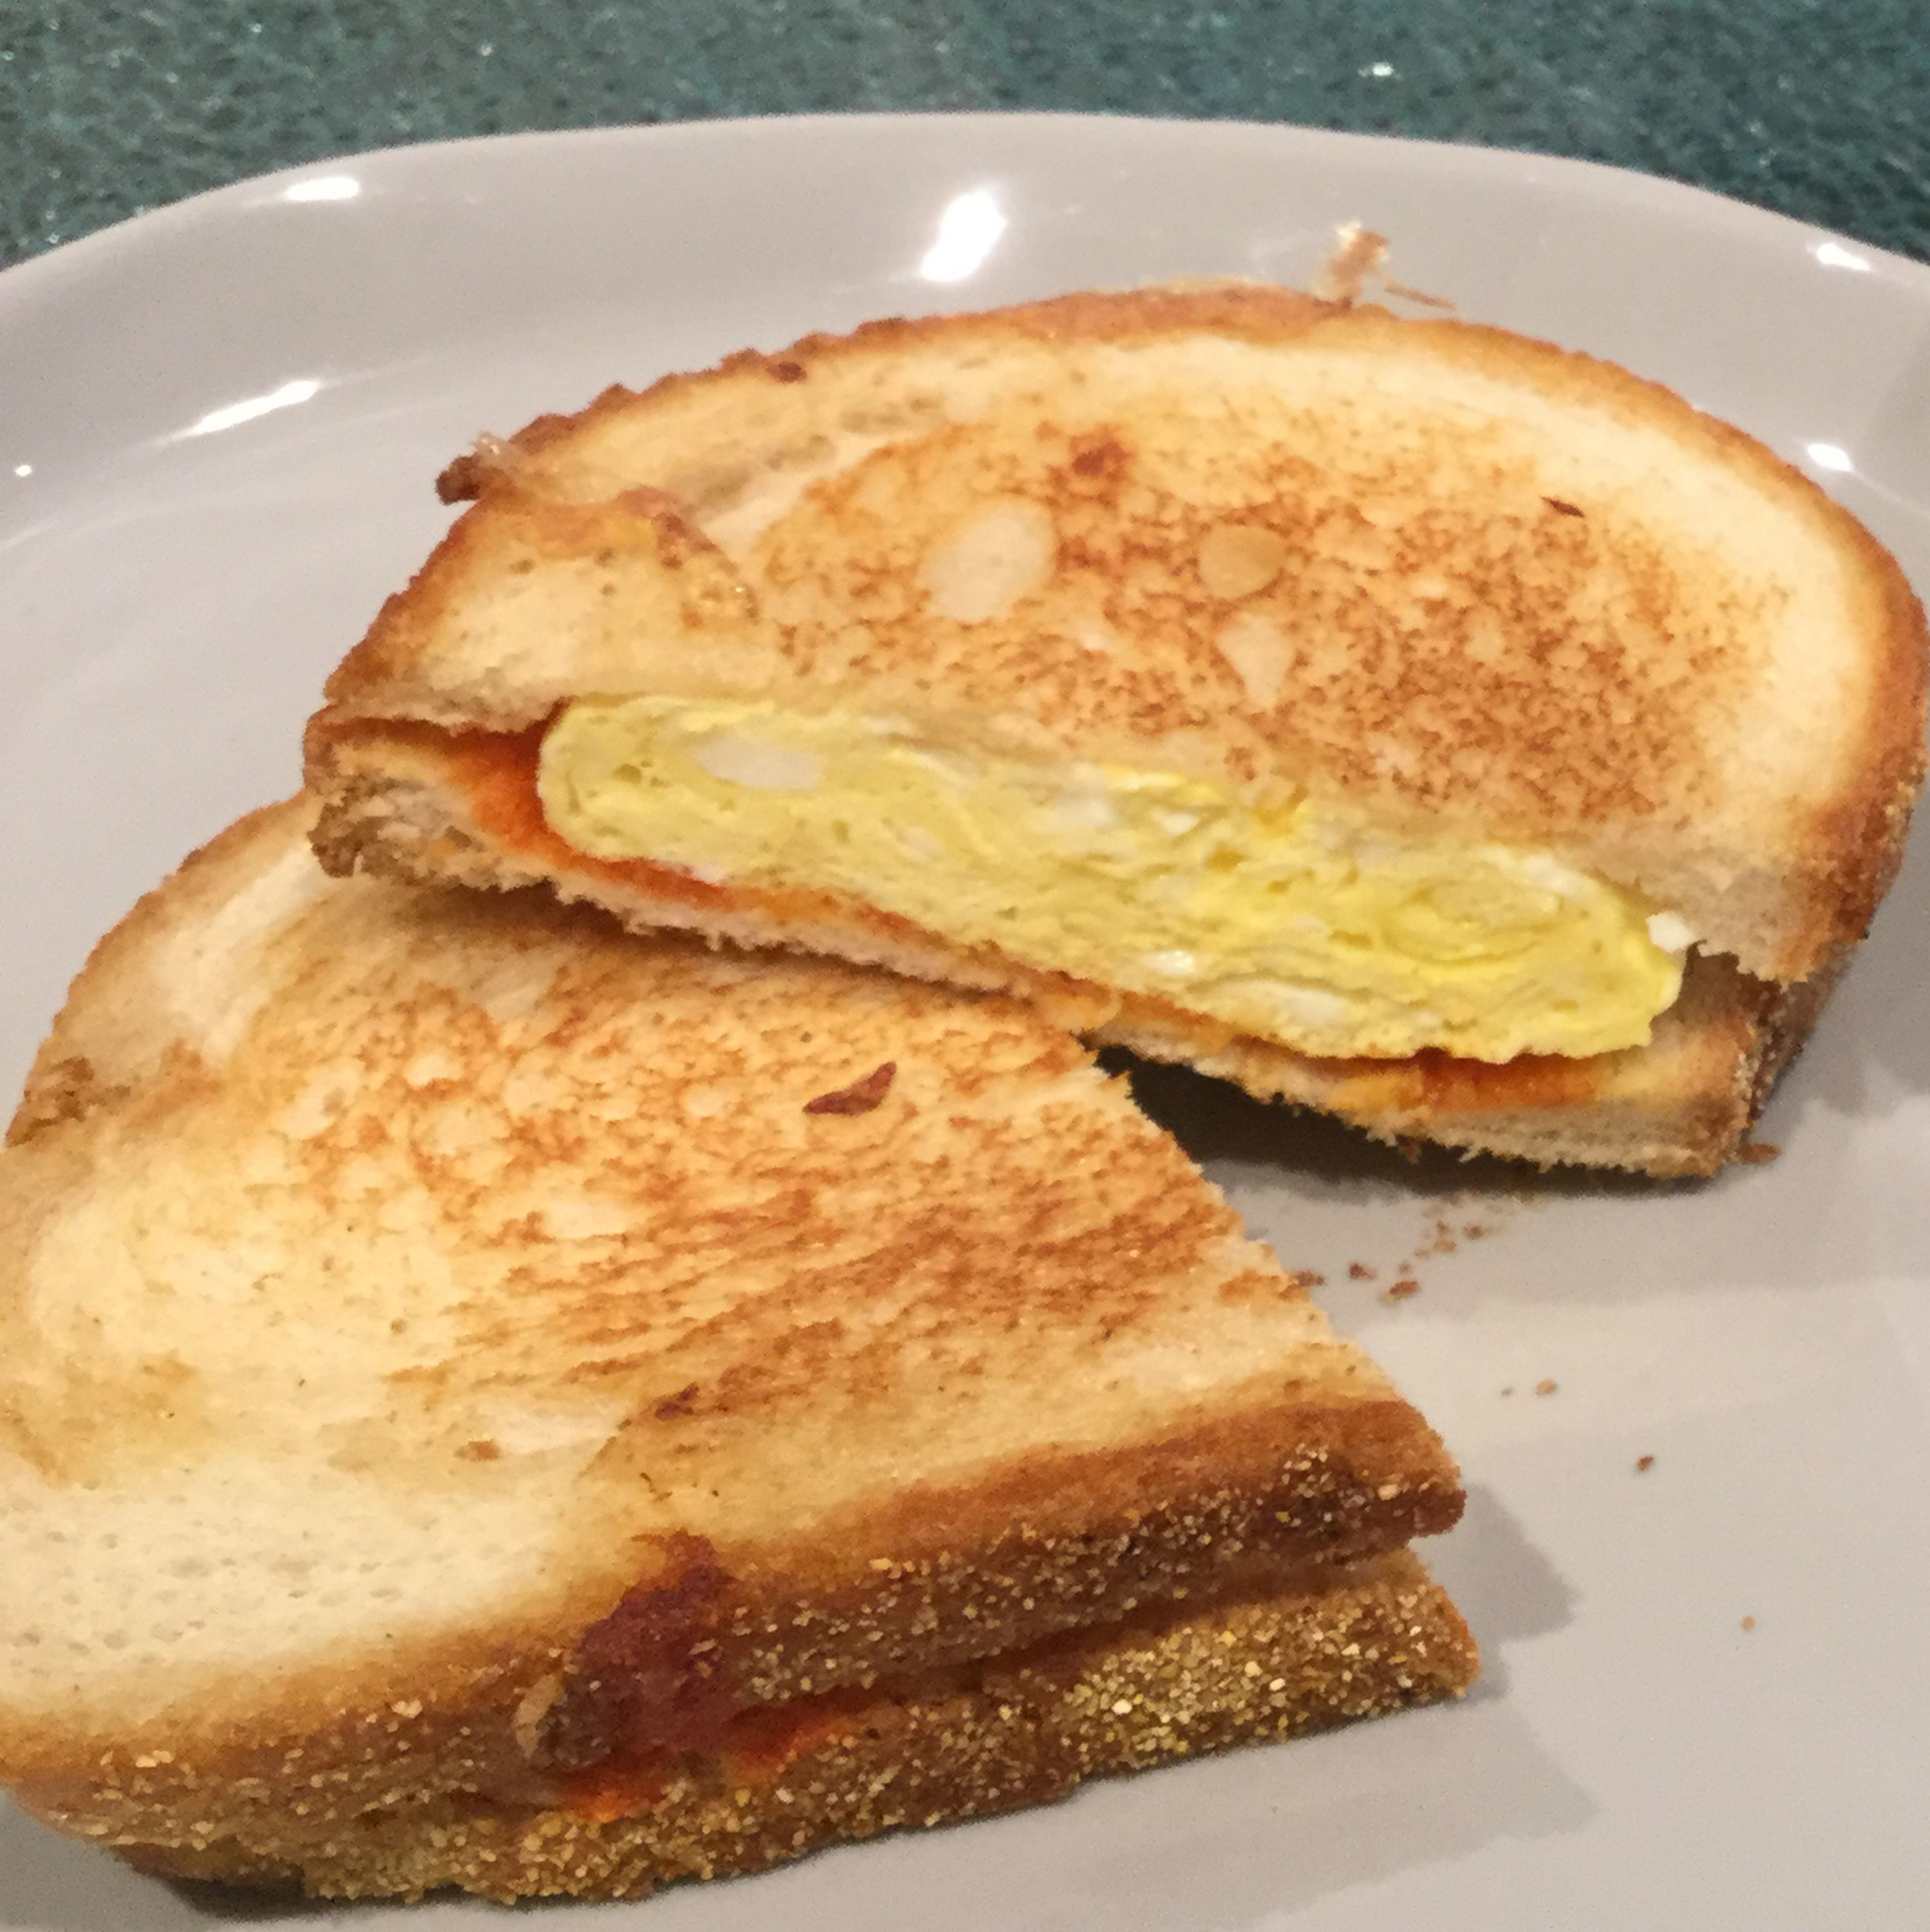 Spicy egg sandwich